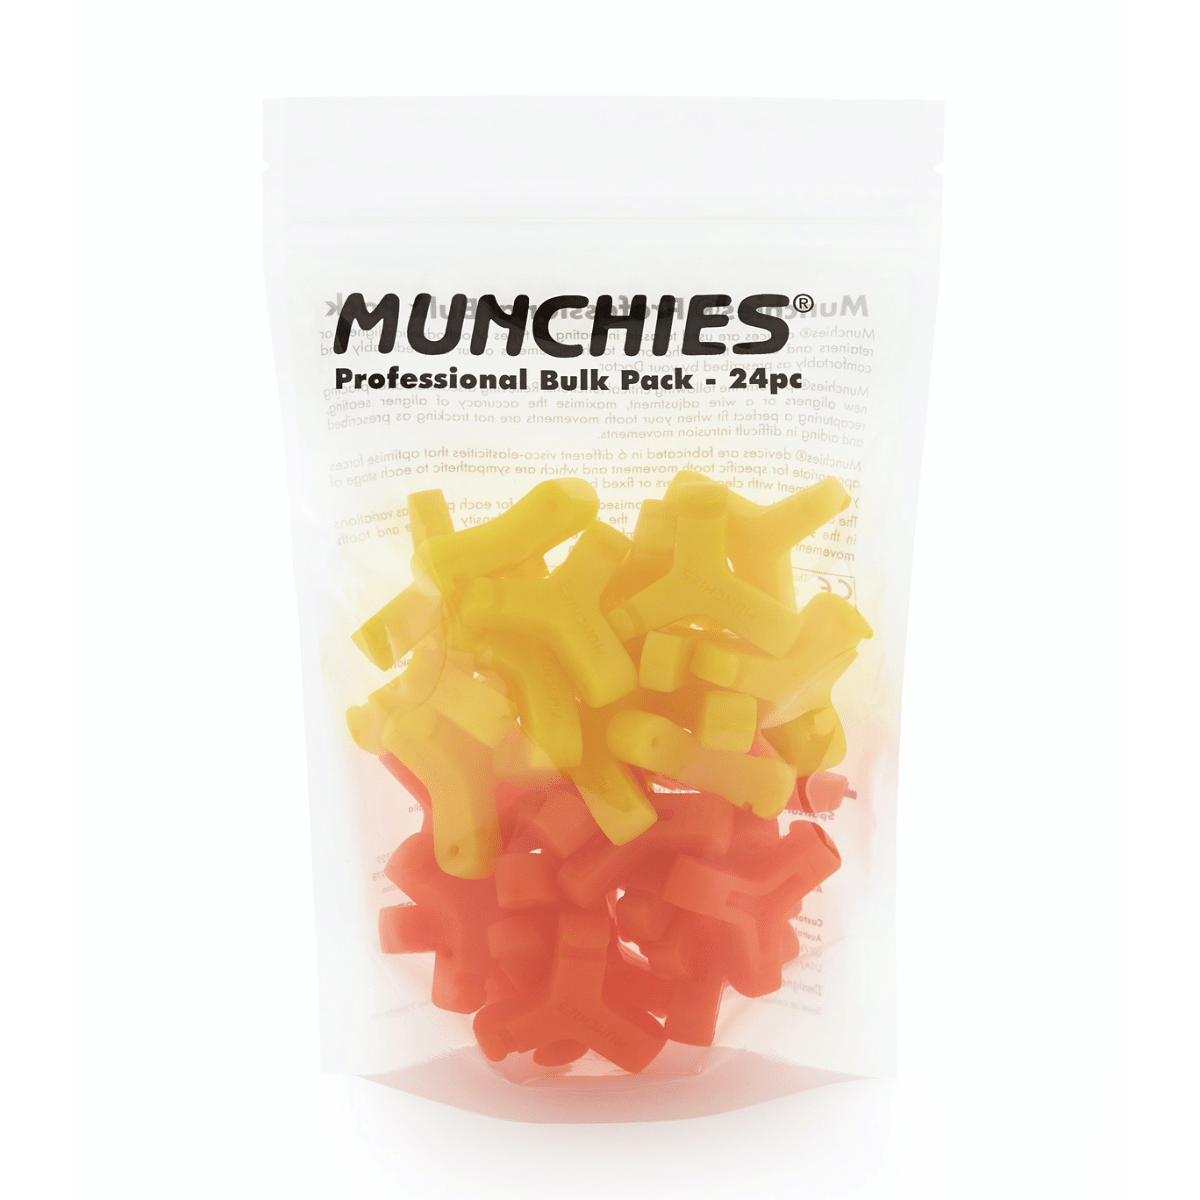 Yellow and orange Munchies® Bulk Pack